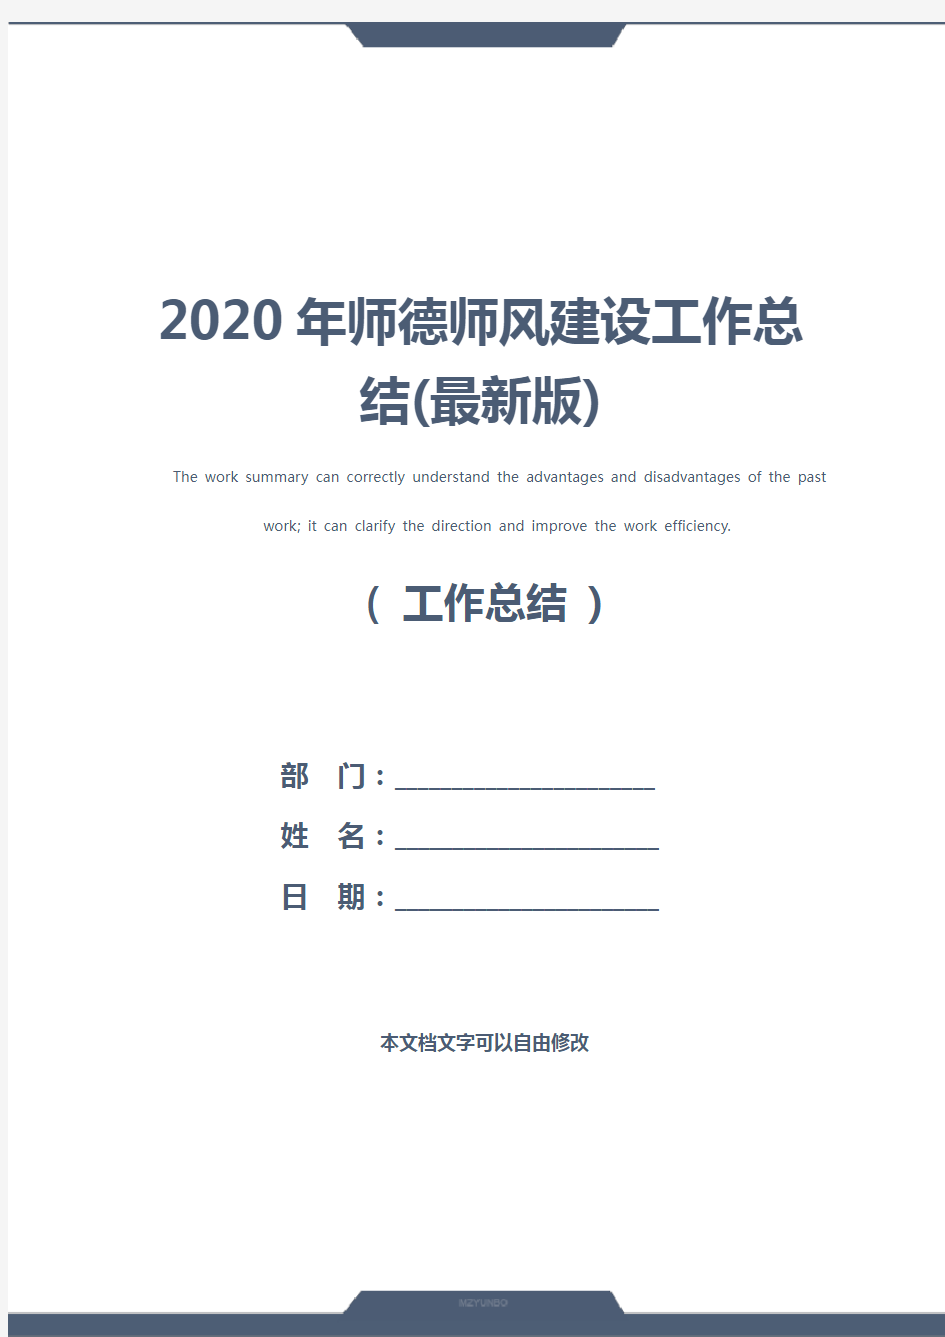 2020年师德师风建设工作总结(最新版)